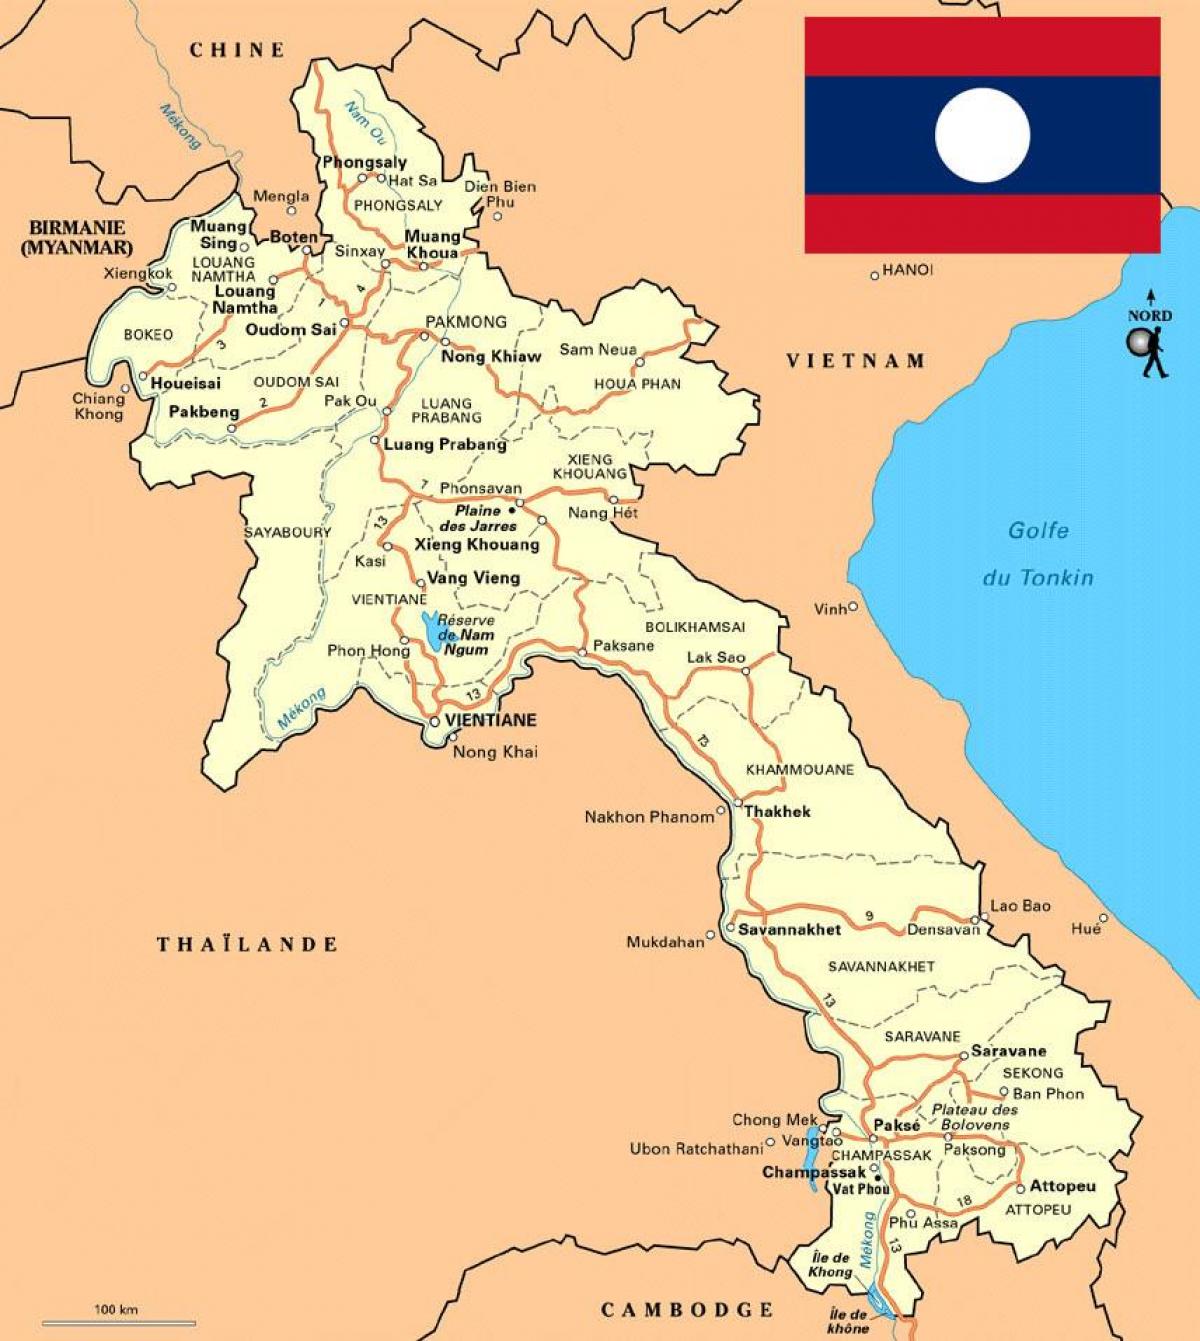 Số lượng tỉnh và huyện lỵ Lào: Lào theo dõi thời gian và phát triển, các tỉnh và huyện dần mọc lên và trở thành các trung tâm độc lập với chính quyền trung ương đang điều hành. Không chỉ có ít nhất một trung tâm đô thị ở mỗi tỉnh, mà nó còn là một điều kiện quan trọng để hỗ trợ cho hoạt động kinh tế và xã hội tại Lào.